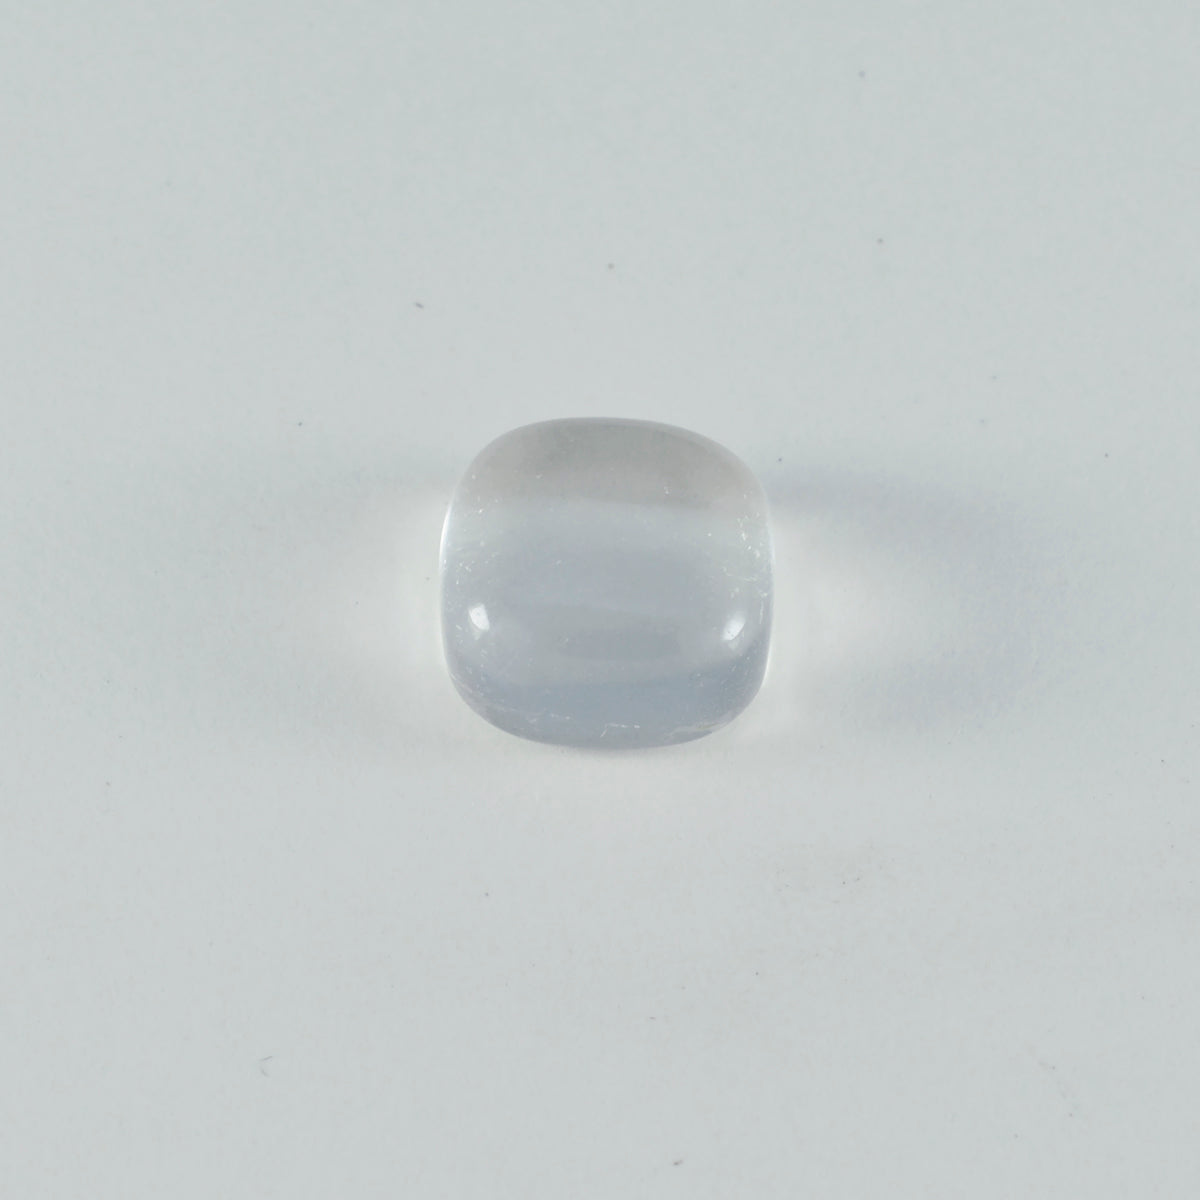 riyogems 1pc ホワイトクリスタルクォーツカボション 10x10 mm クッション形状見栄えの良い品質ルース宝石